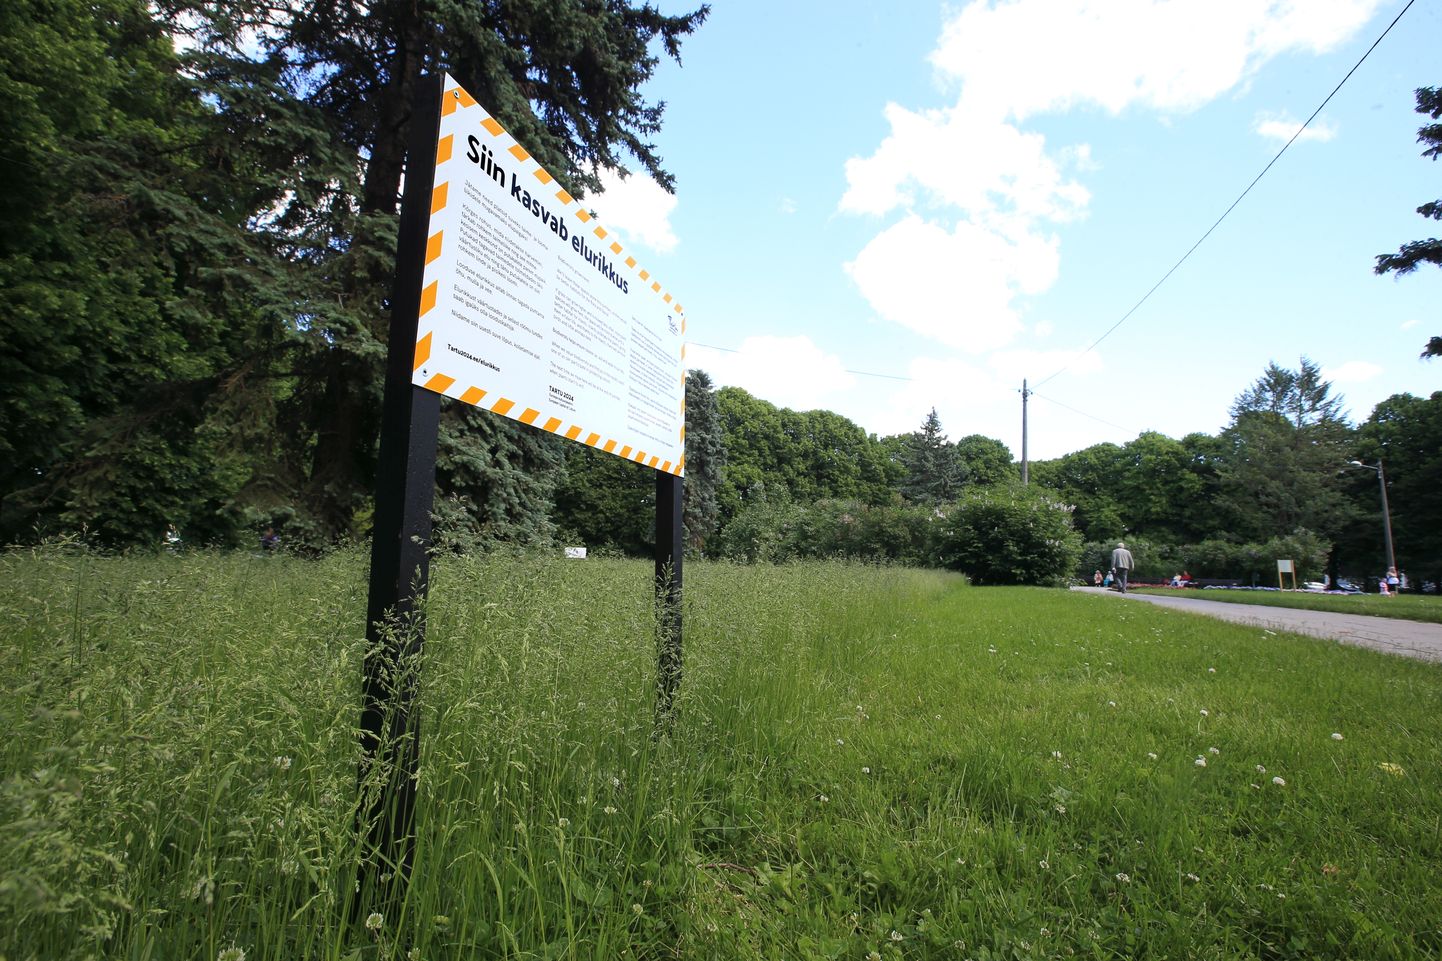 Sel aastal jätab Tartu linn liigirikkuse tõstmiseks mitmed haljasalad niitmata.
Pildil sellest teavitav tahvel kesklinna pargis.